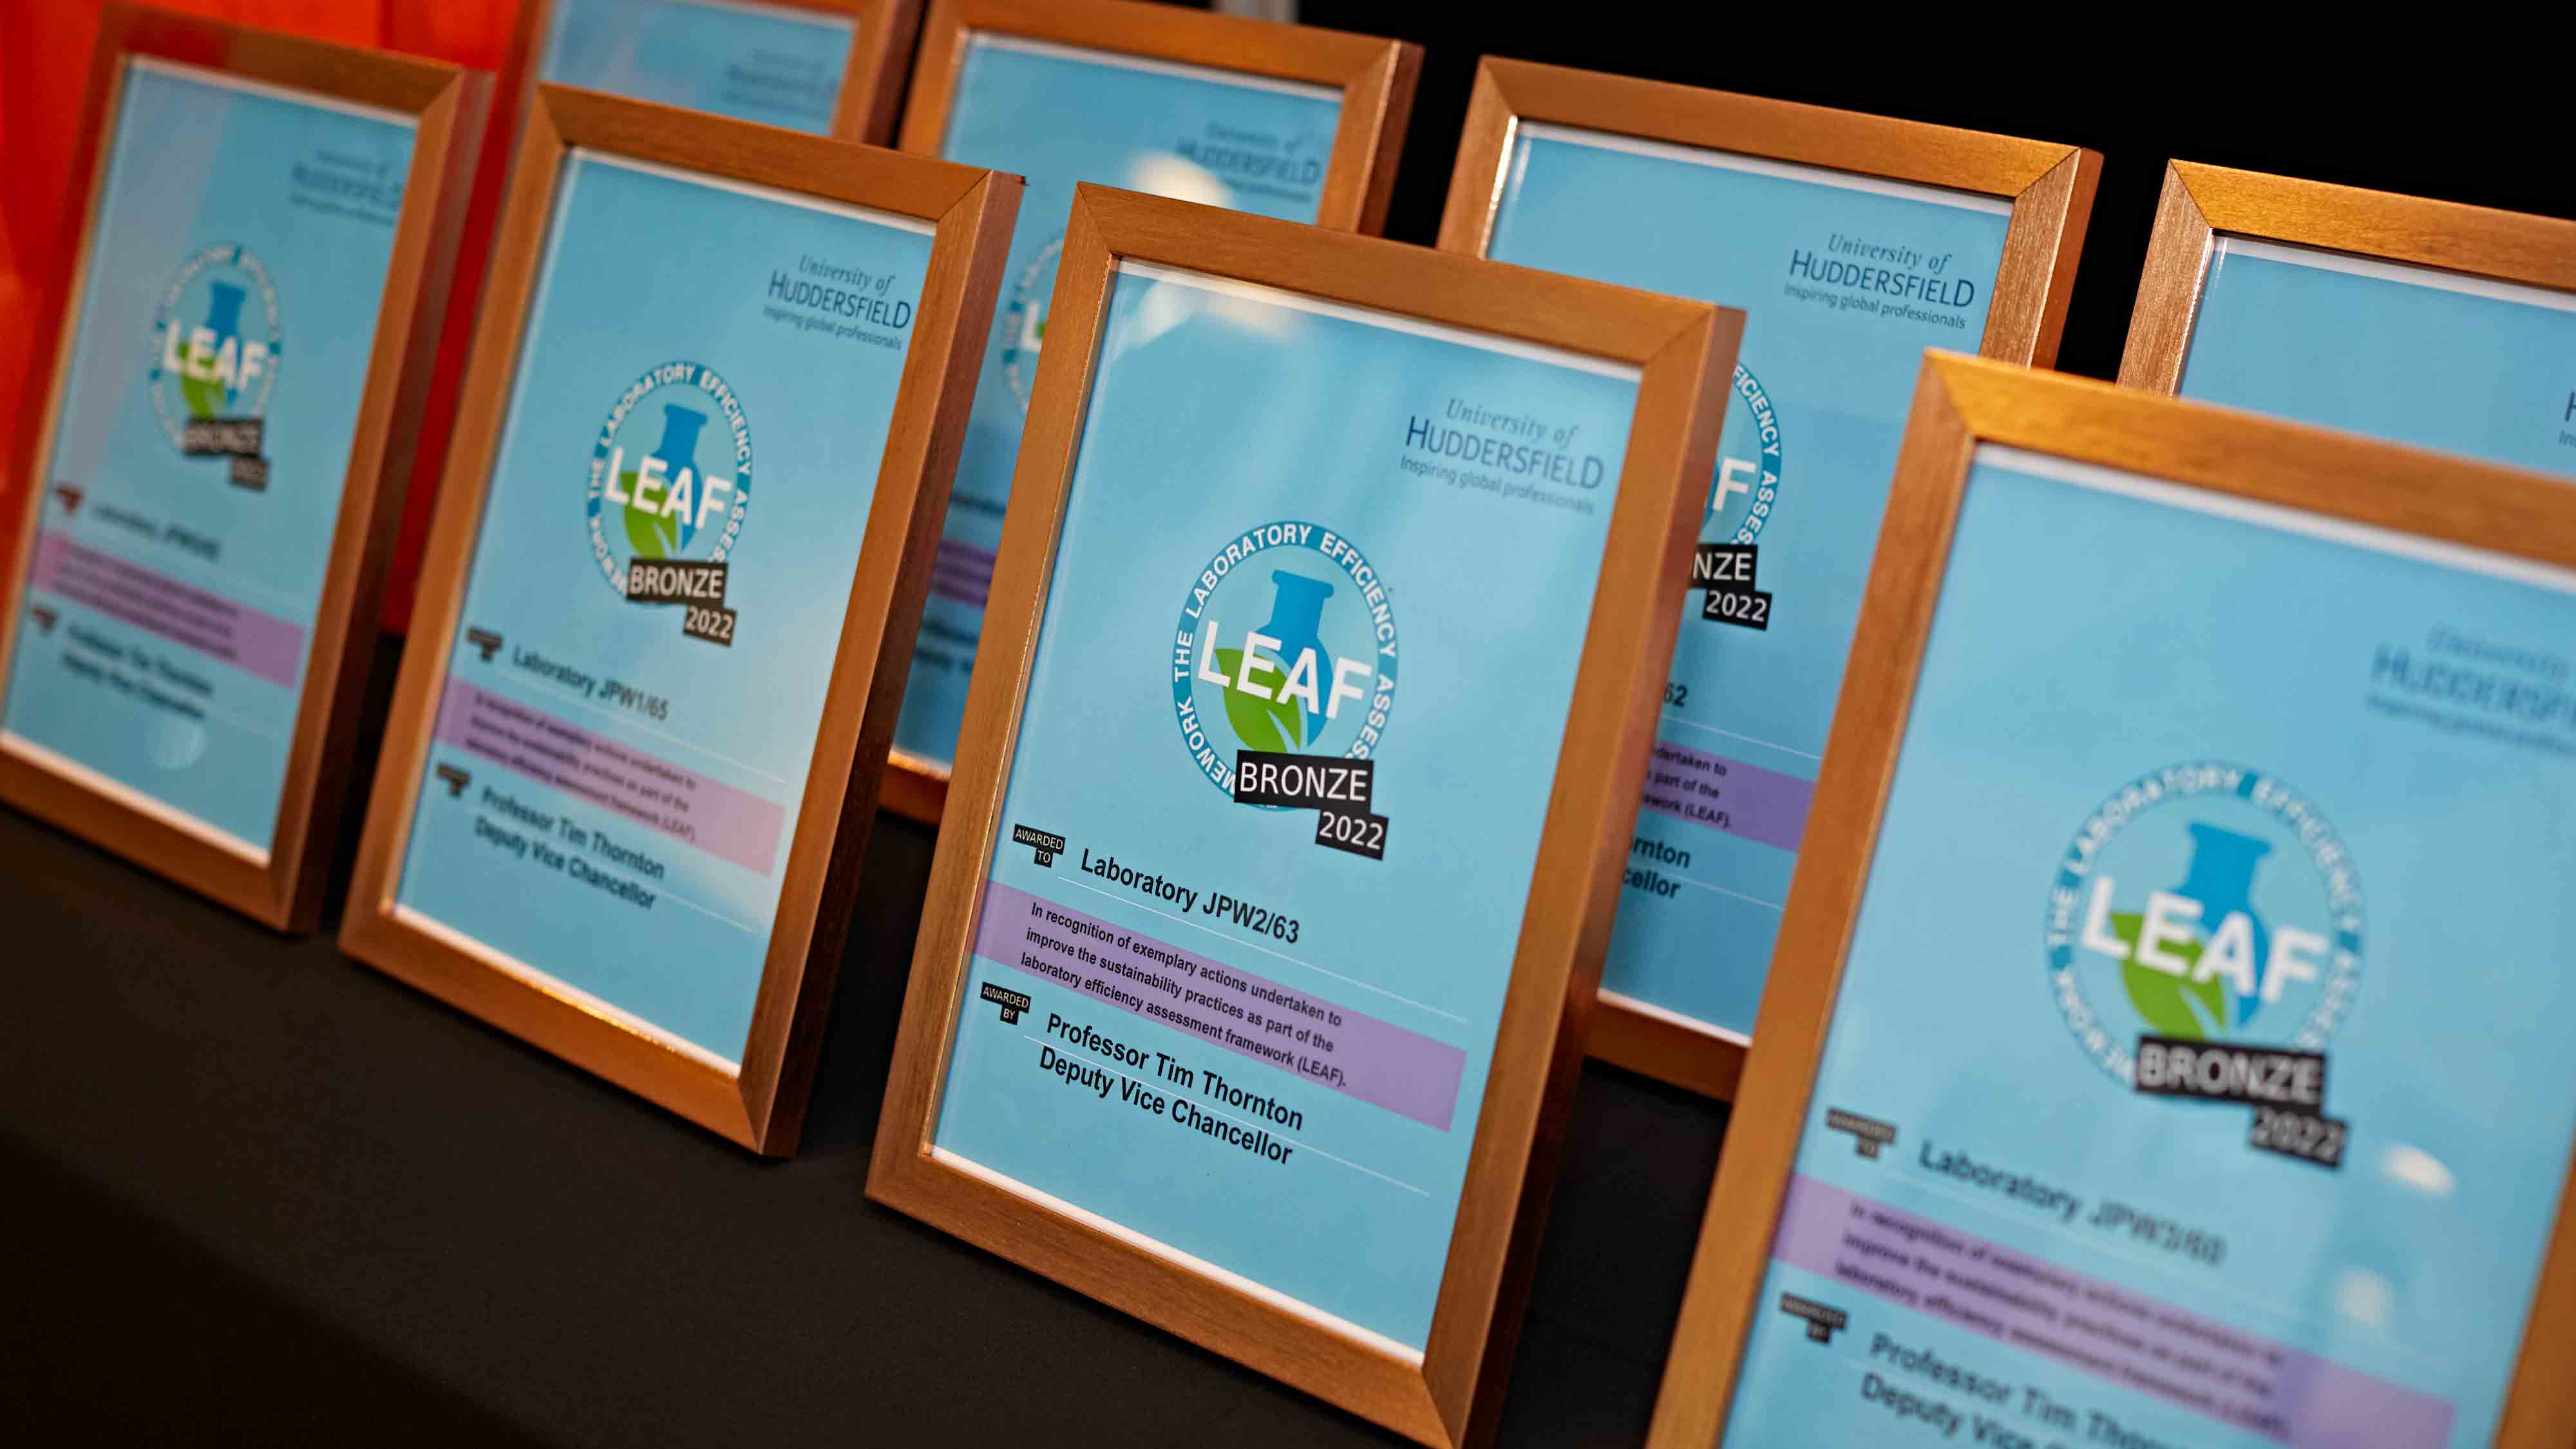 LEAF Awards 2022 certificates